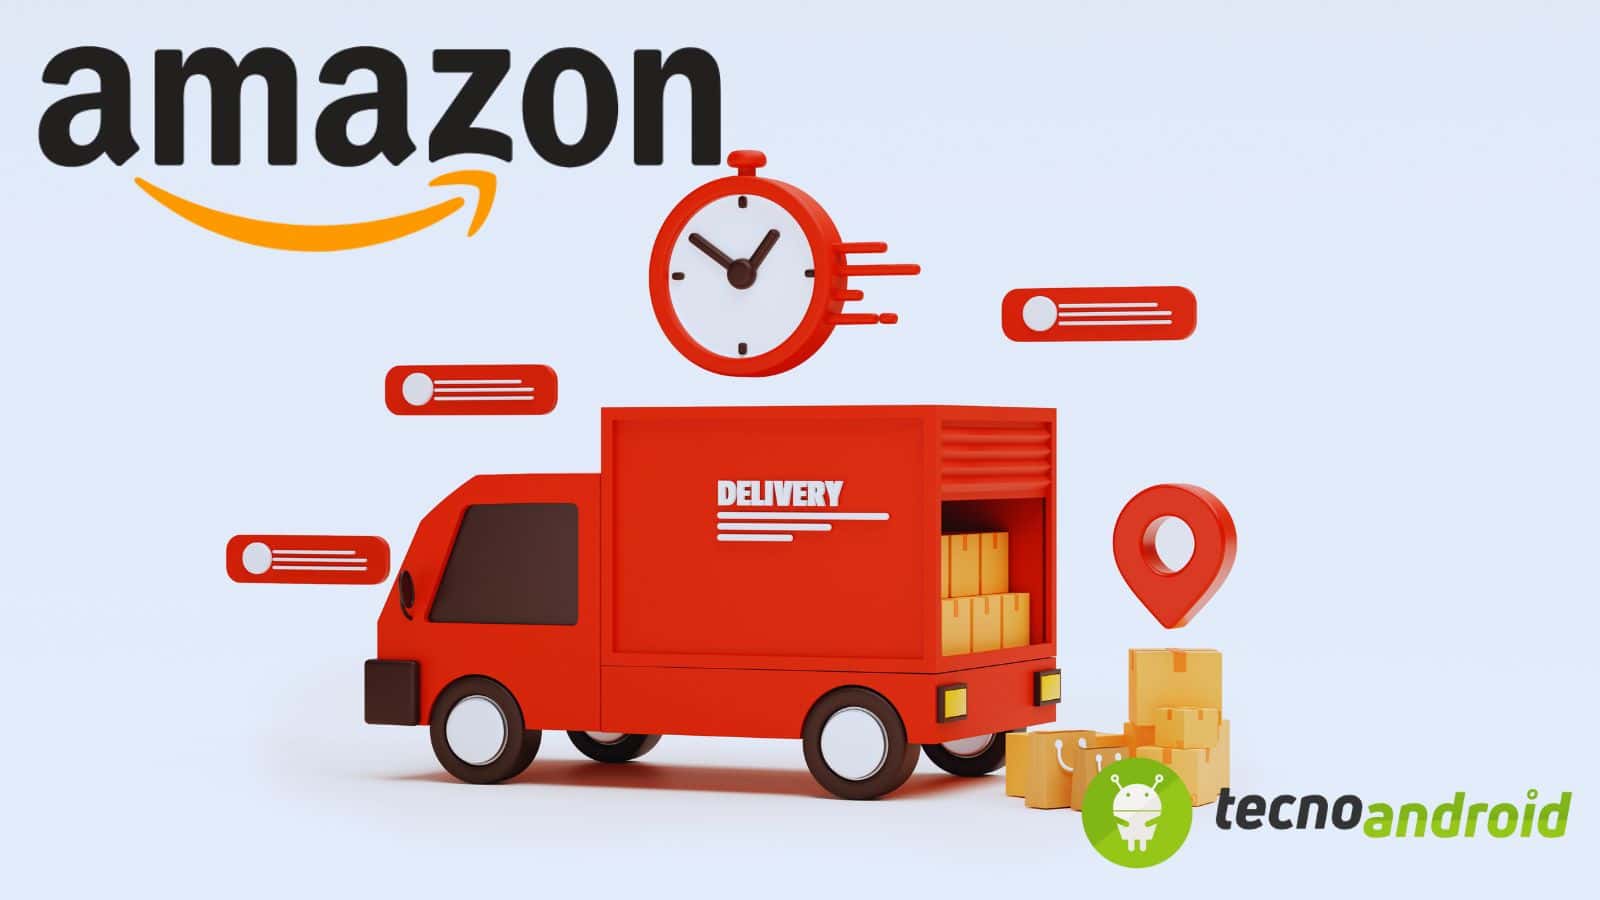 Amazon offre la possibilità di ritirare in Locker o Counter